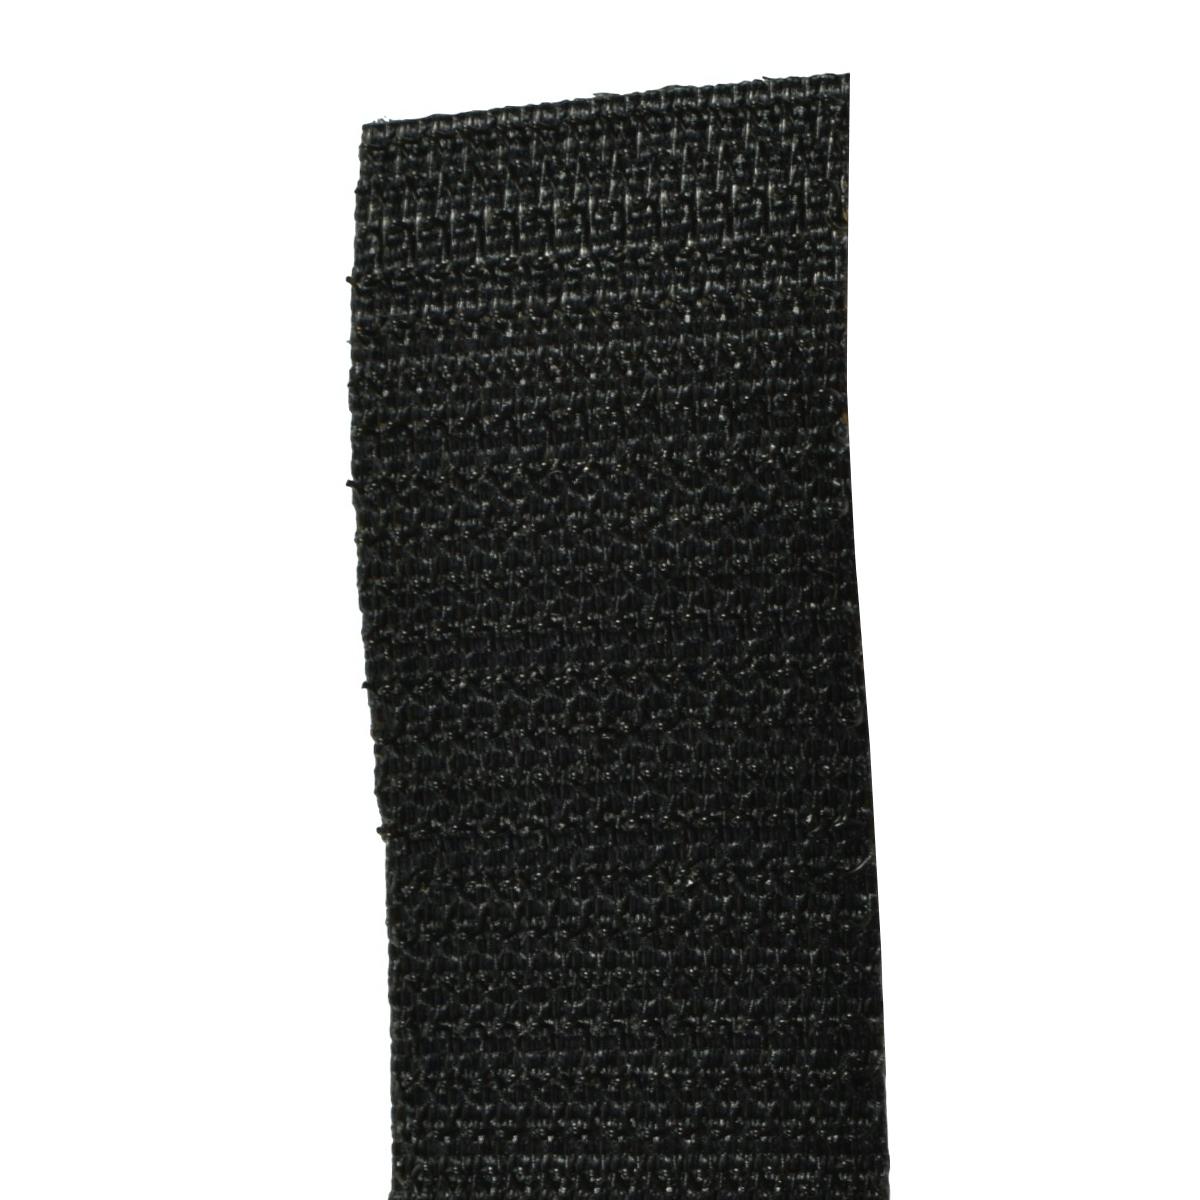 Parche Crossfit Negro sobre Rojo. Rectangular 12 x 5 cm Tela Impresa  sublimado Borde Hilo Negro y Velcro Macho Trasero - 1 Unidad